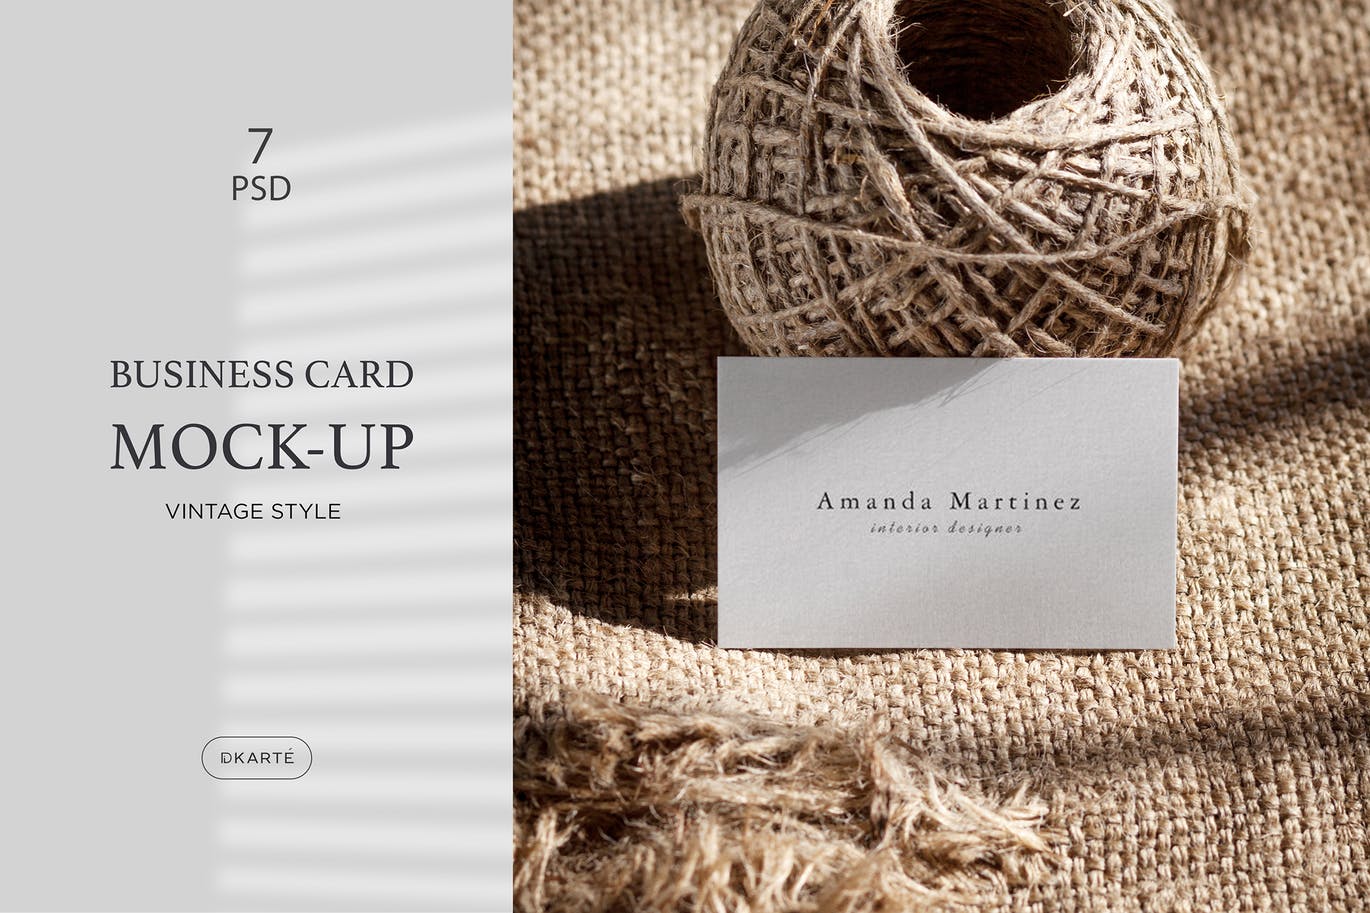 复古优雅风格背景企业名片设计展示样机 Business Card Mock-Up设计素材模板